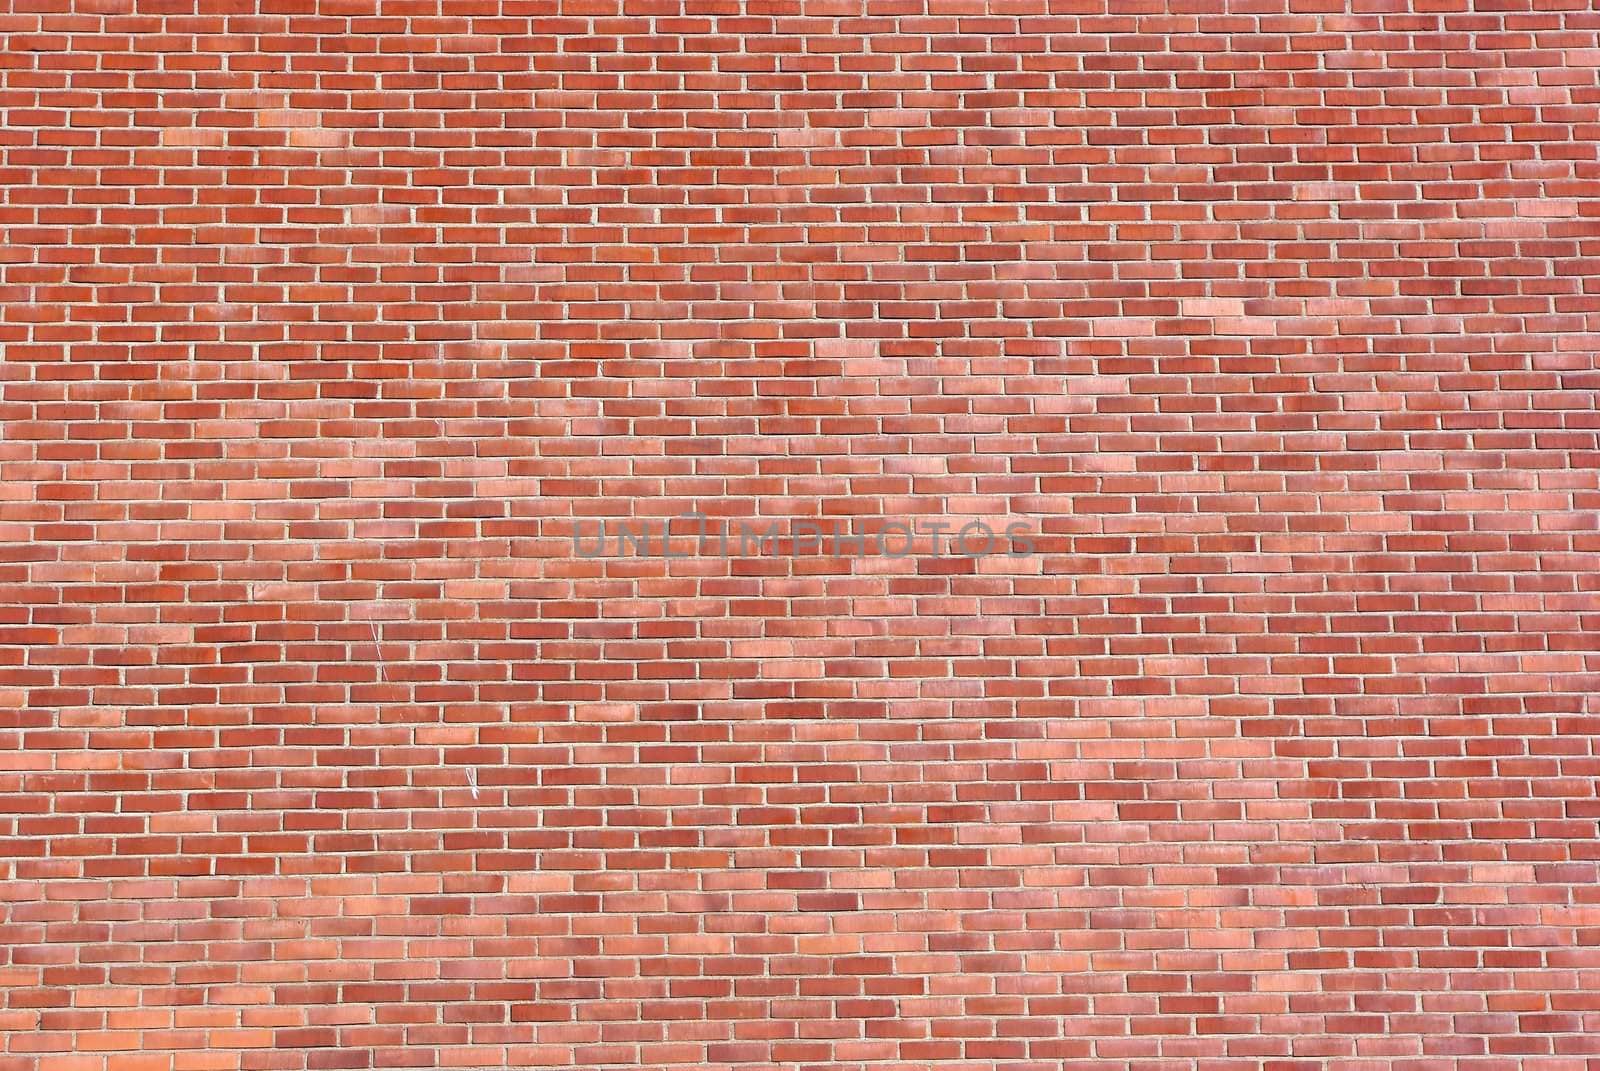 Big brown brick wall